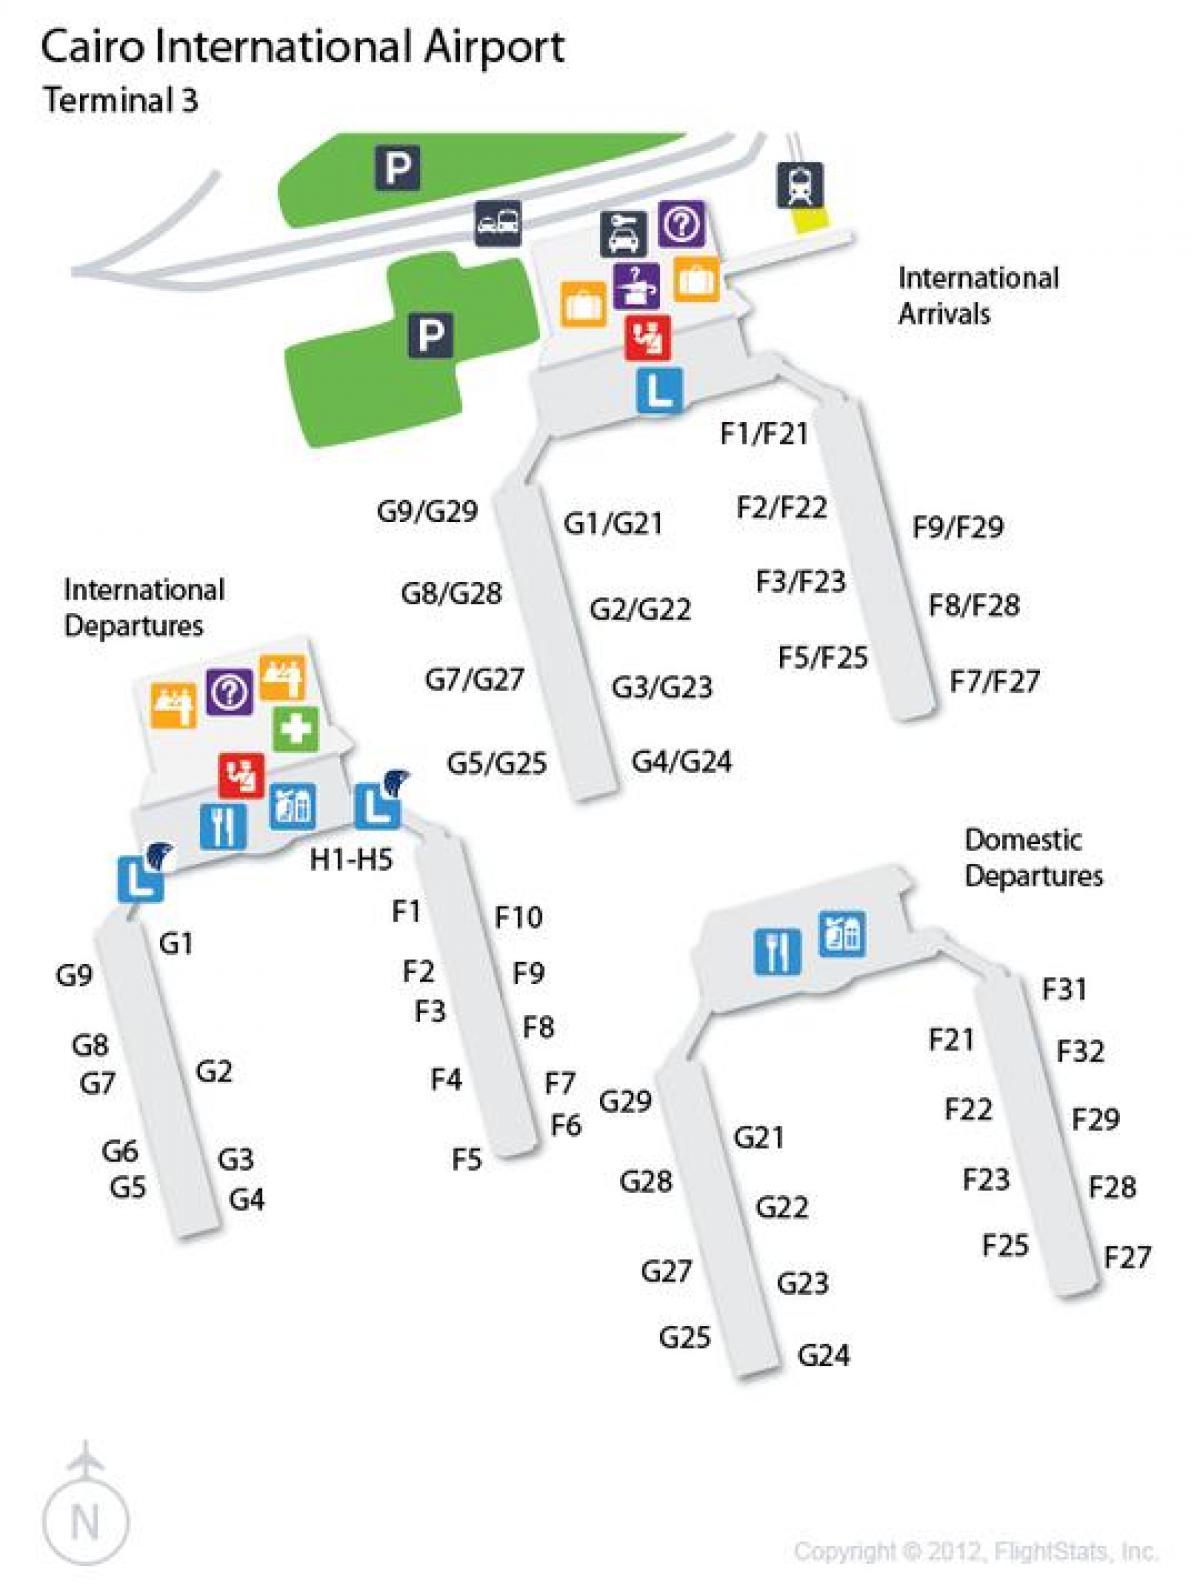 Zemljevid kairu letališki terminal